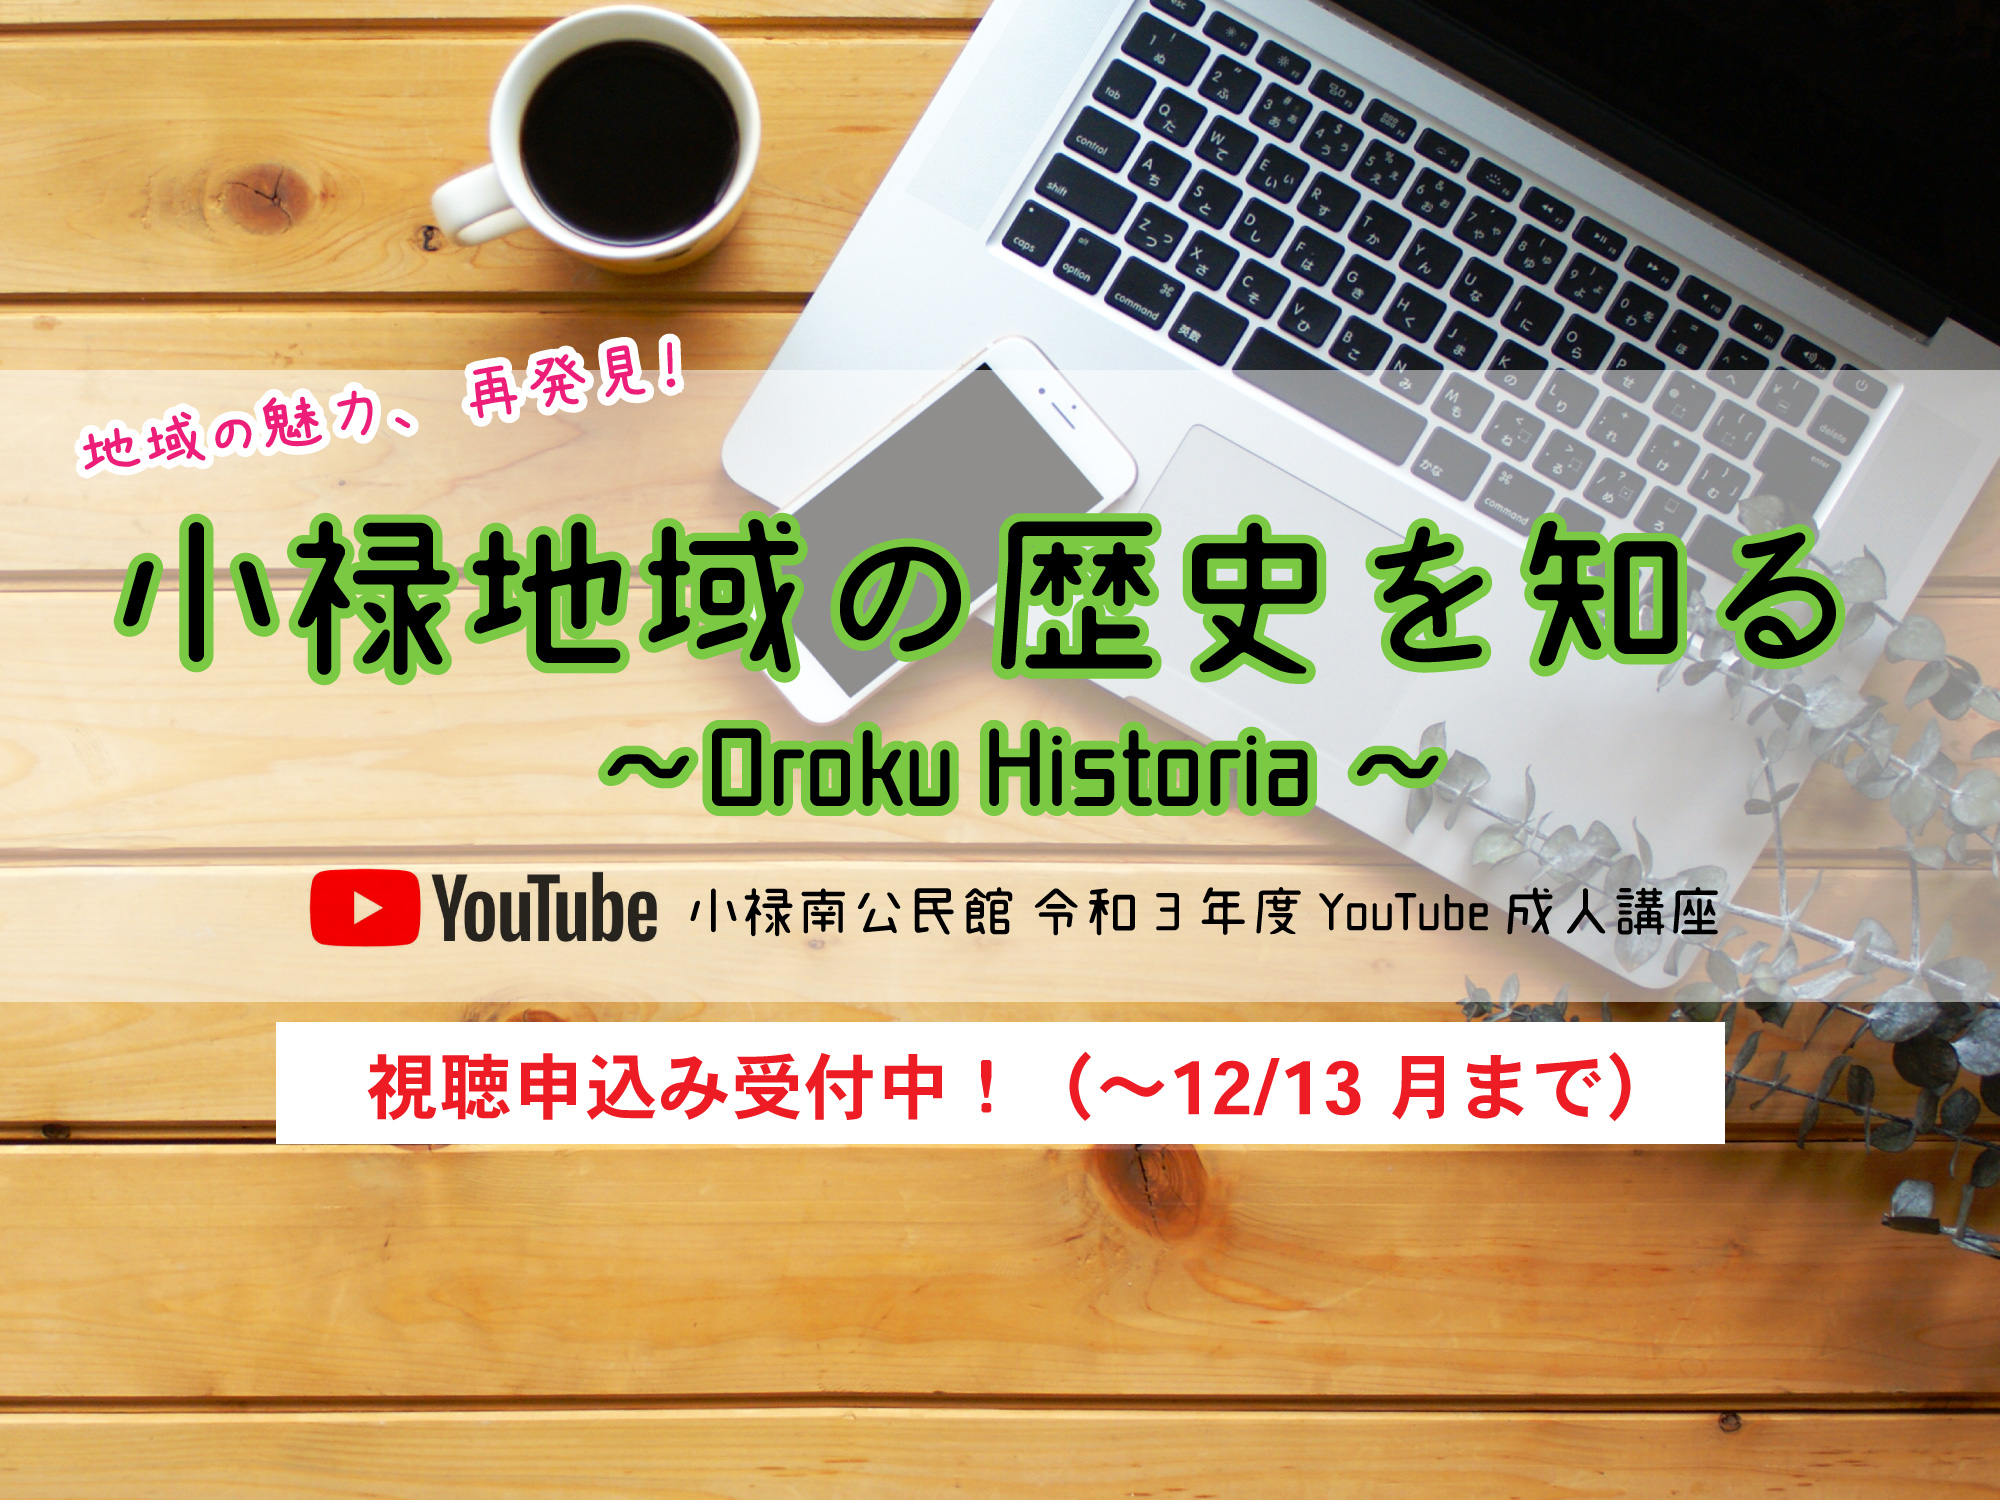 小禄地域の歴史講座がYouTubeで実施されます！『小禄地域の歴史を知る』小禄南公民館 成人講座 11/29〜